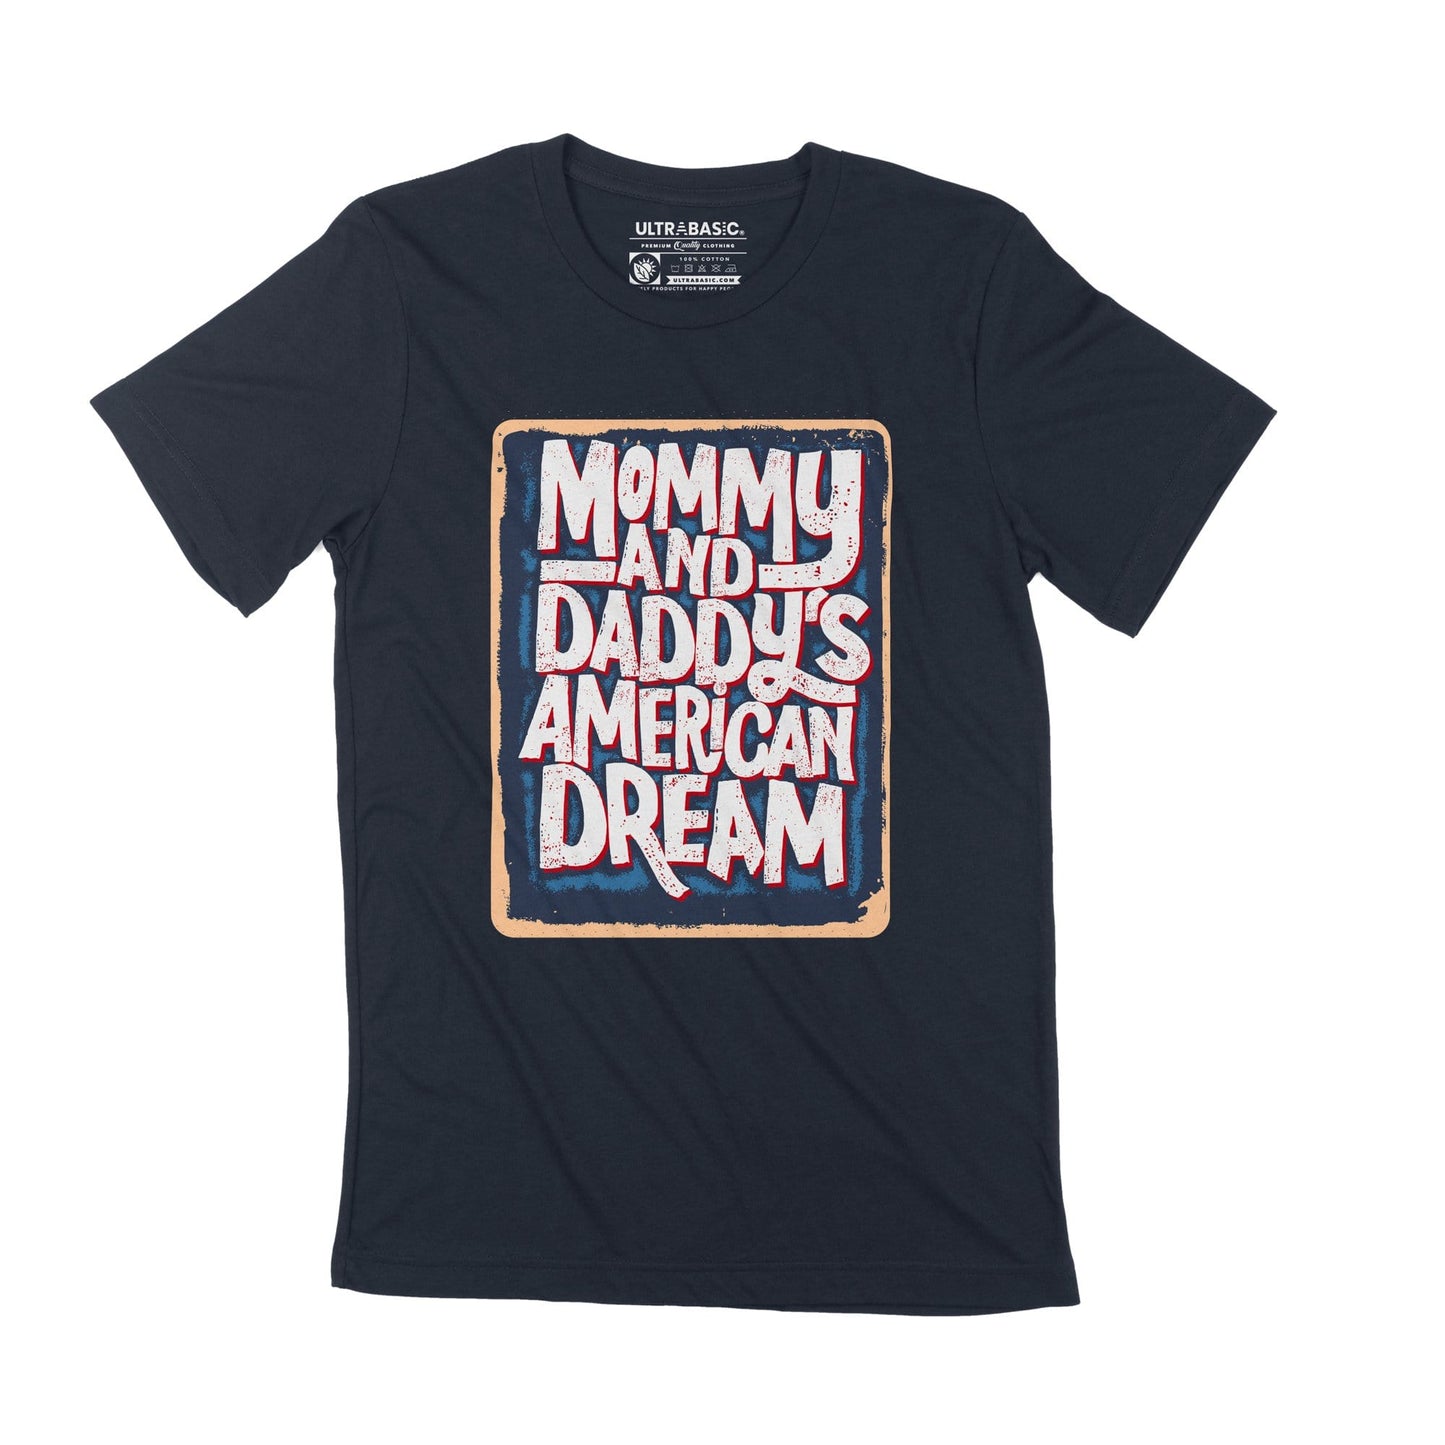 T-Shirt ULTRABASIC pour hommes, maman, papa, rêve américain, famille, Vintage, décontracté, cadeau